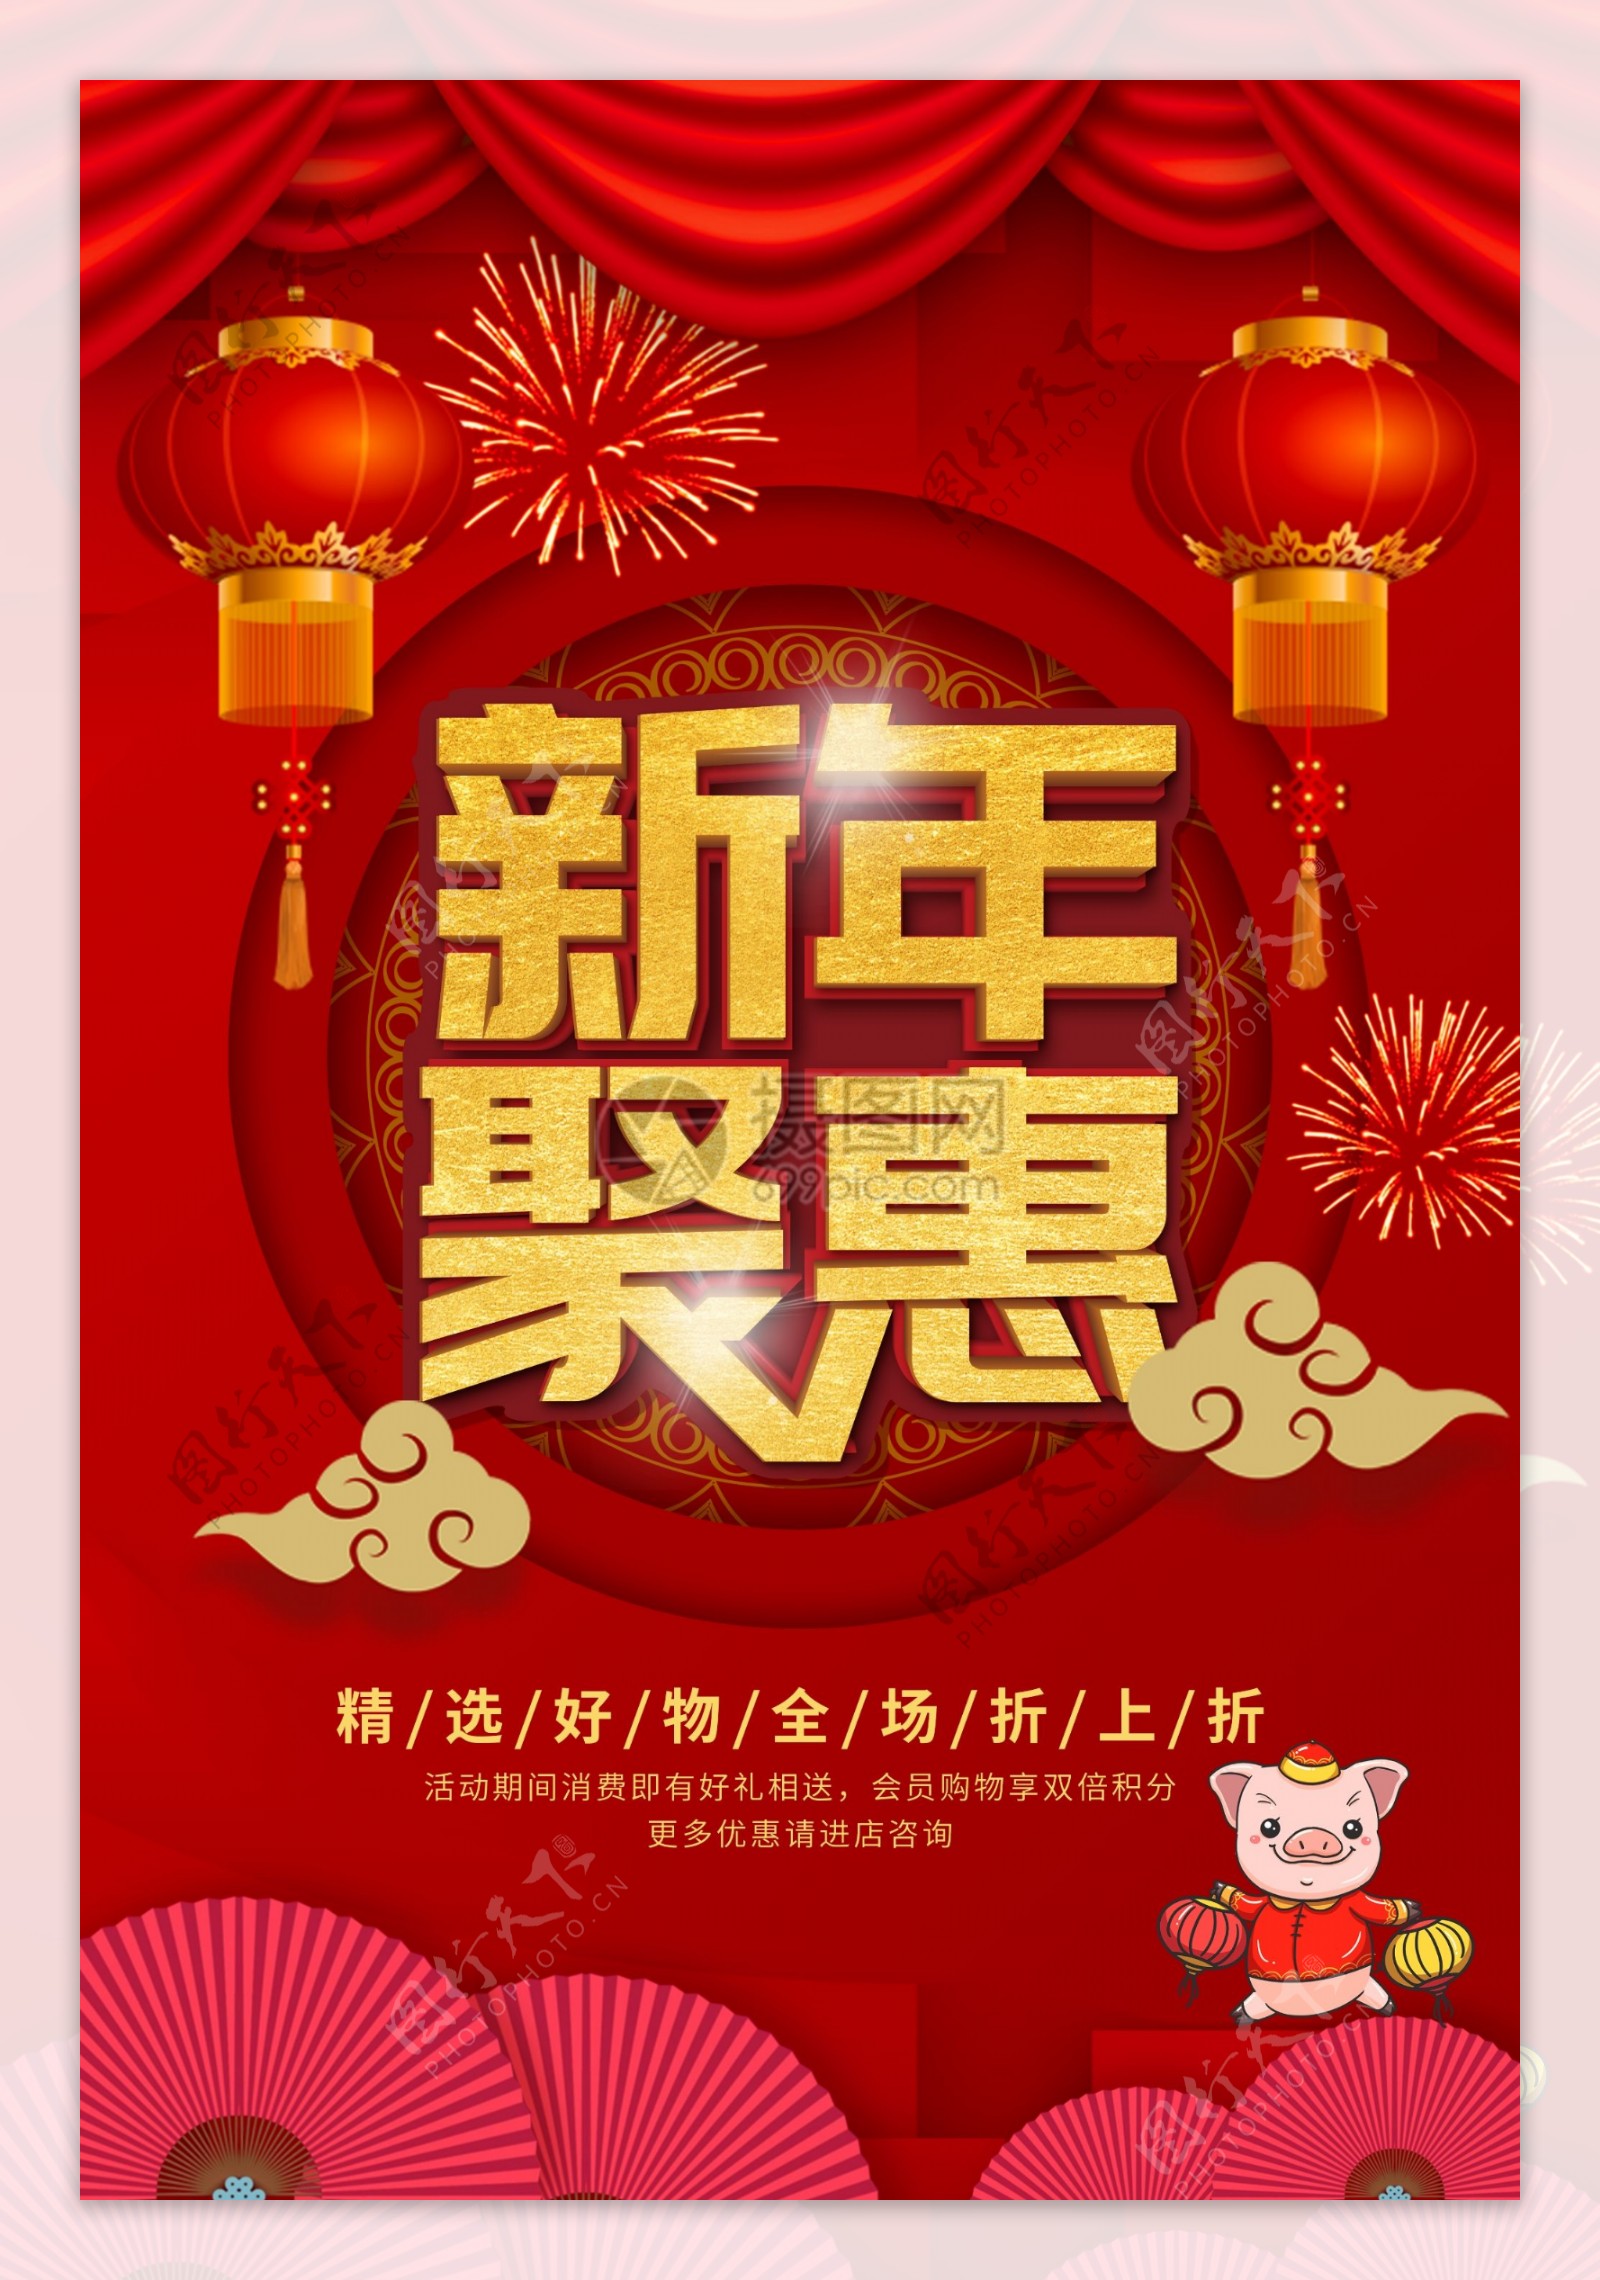 新年聚惠节日促销海报